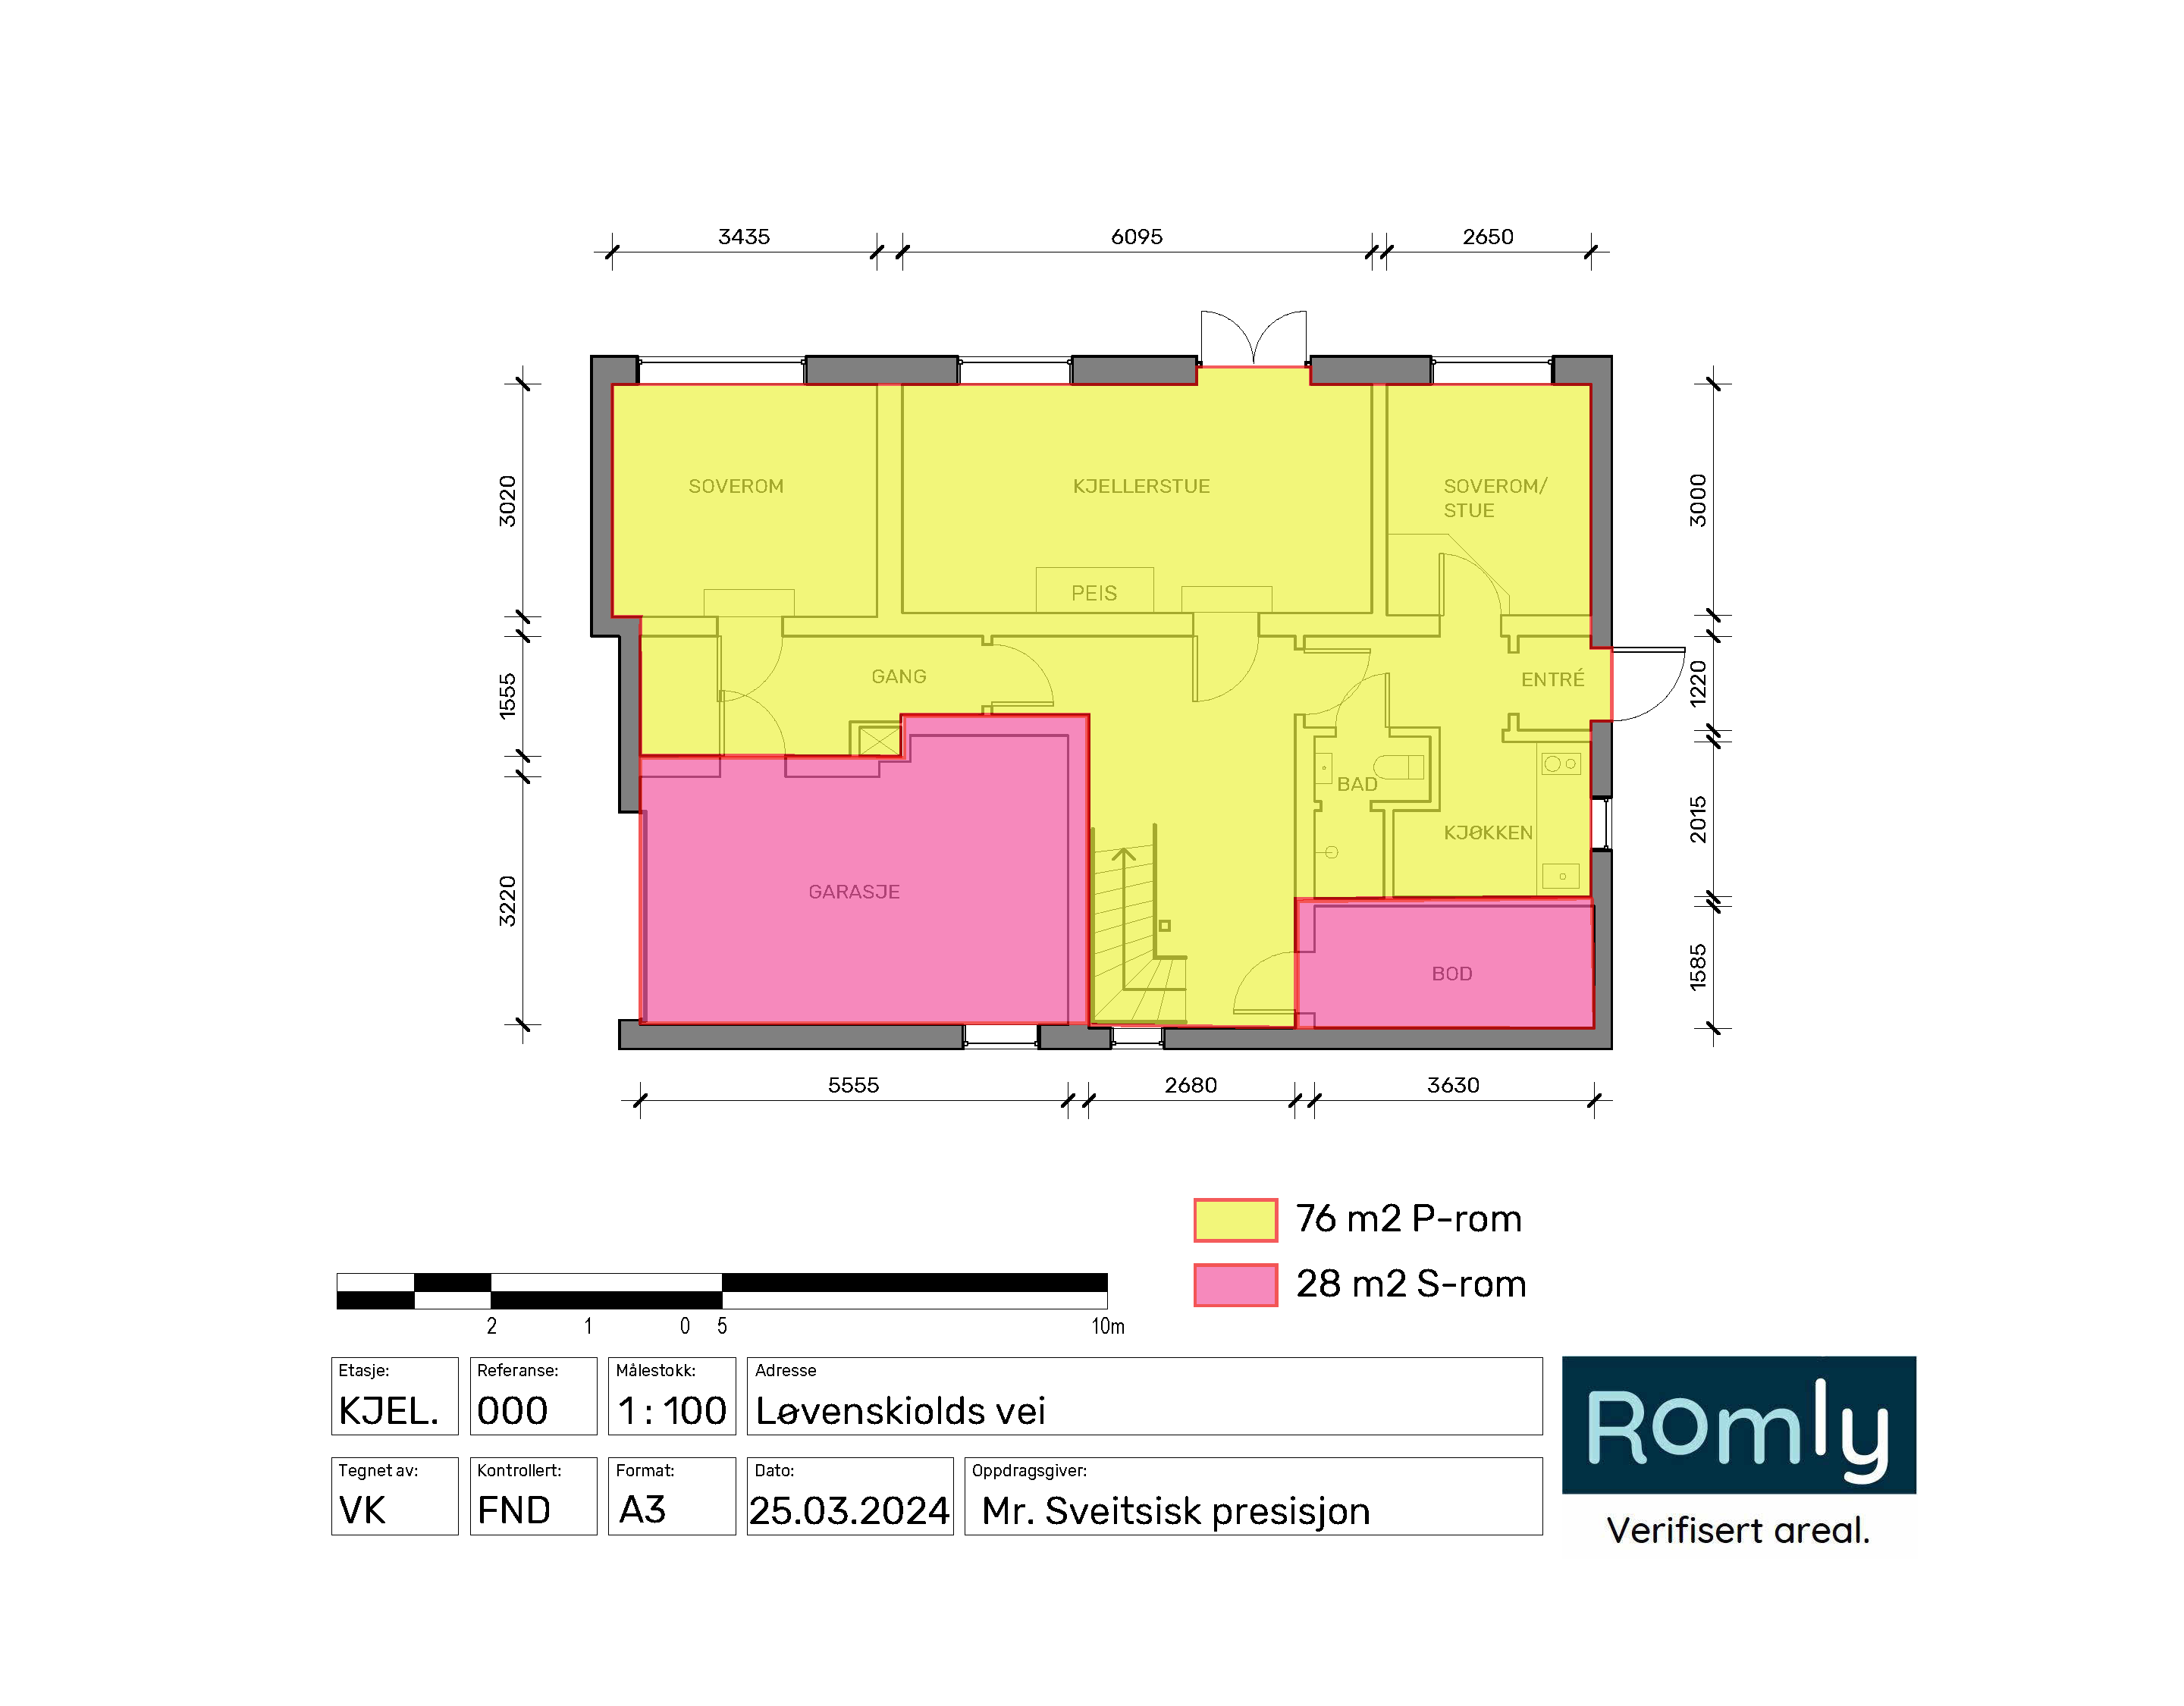 Kjellerplan av villa på Jar som viser beregning av P-rom og S-rom- Romly